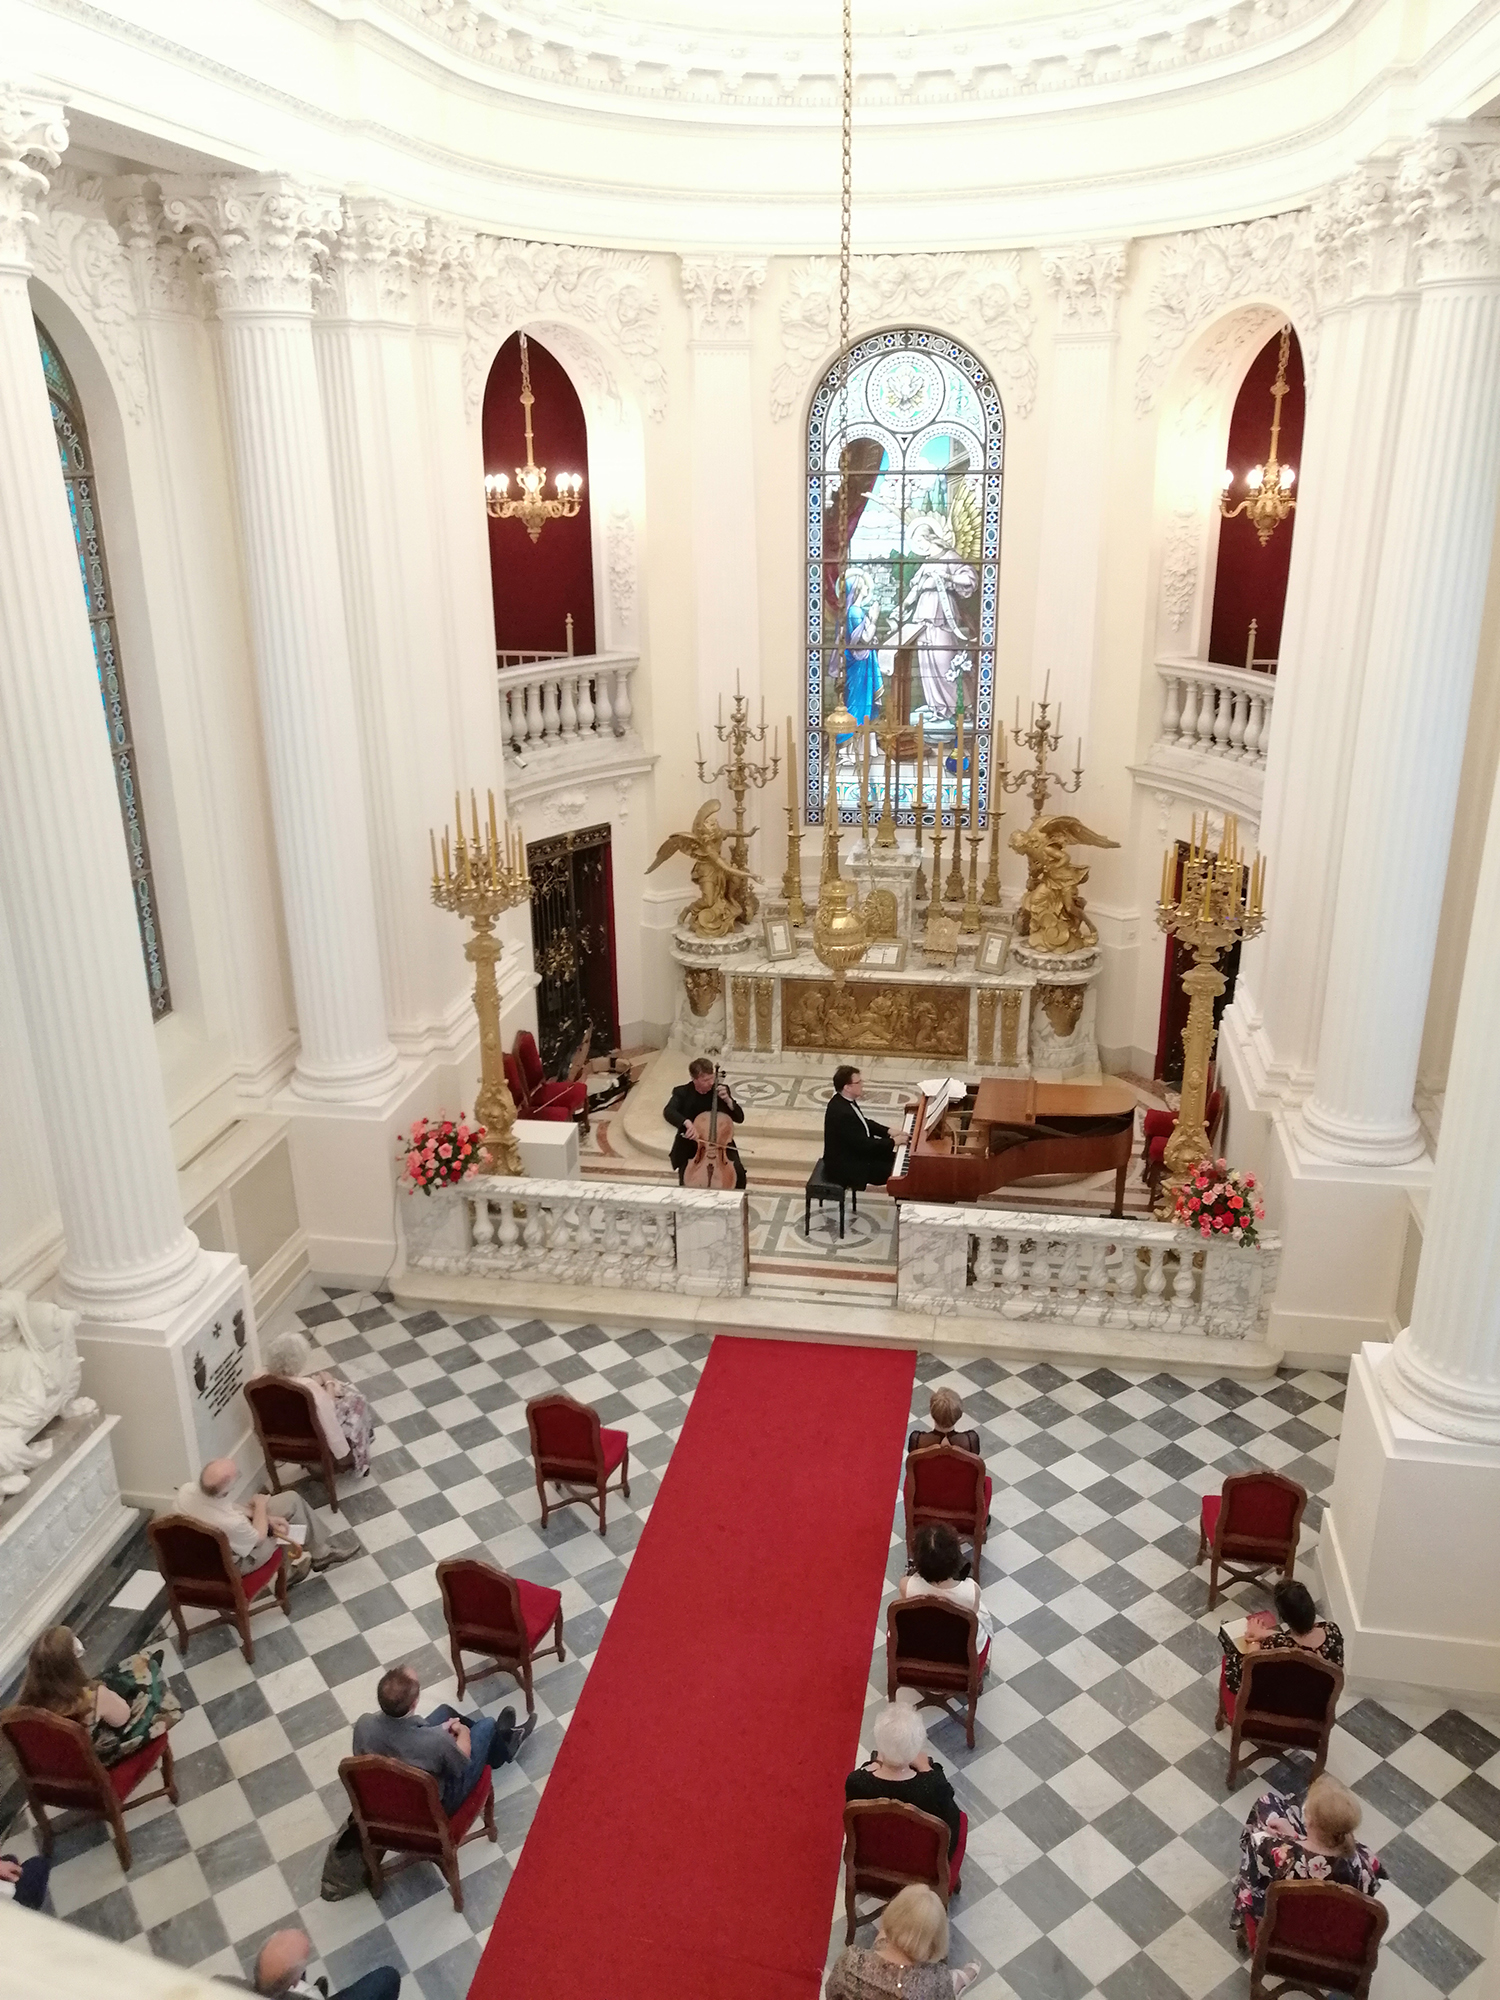 Fotografia z wysokości. Wnętrze jasnej kaplicy. W prezbiterium dwóch artystów. Po prawej stronie mężczyzna grający na fortepianie, po lewej stronie na wiolonczeli. W nawie głównej siedzący pojedynczo, w równych odległościach od siebie słuchacze.